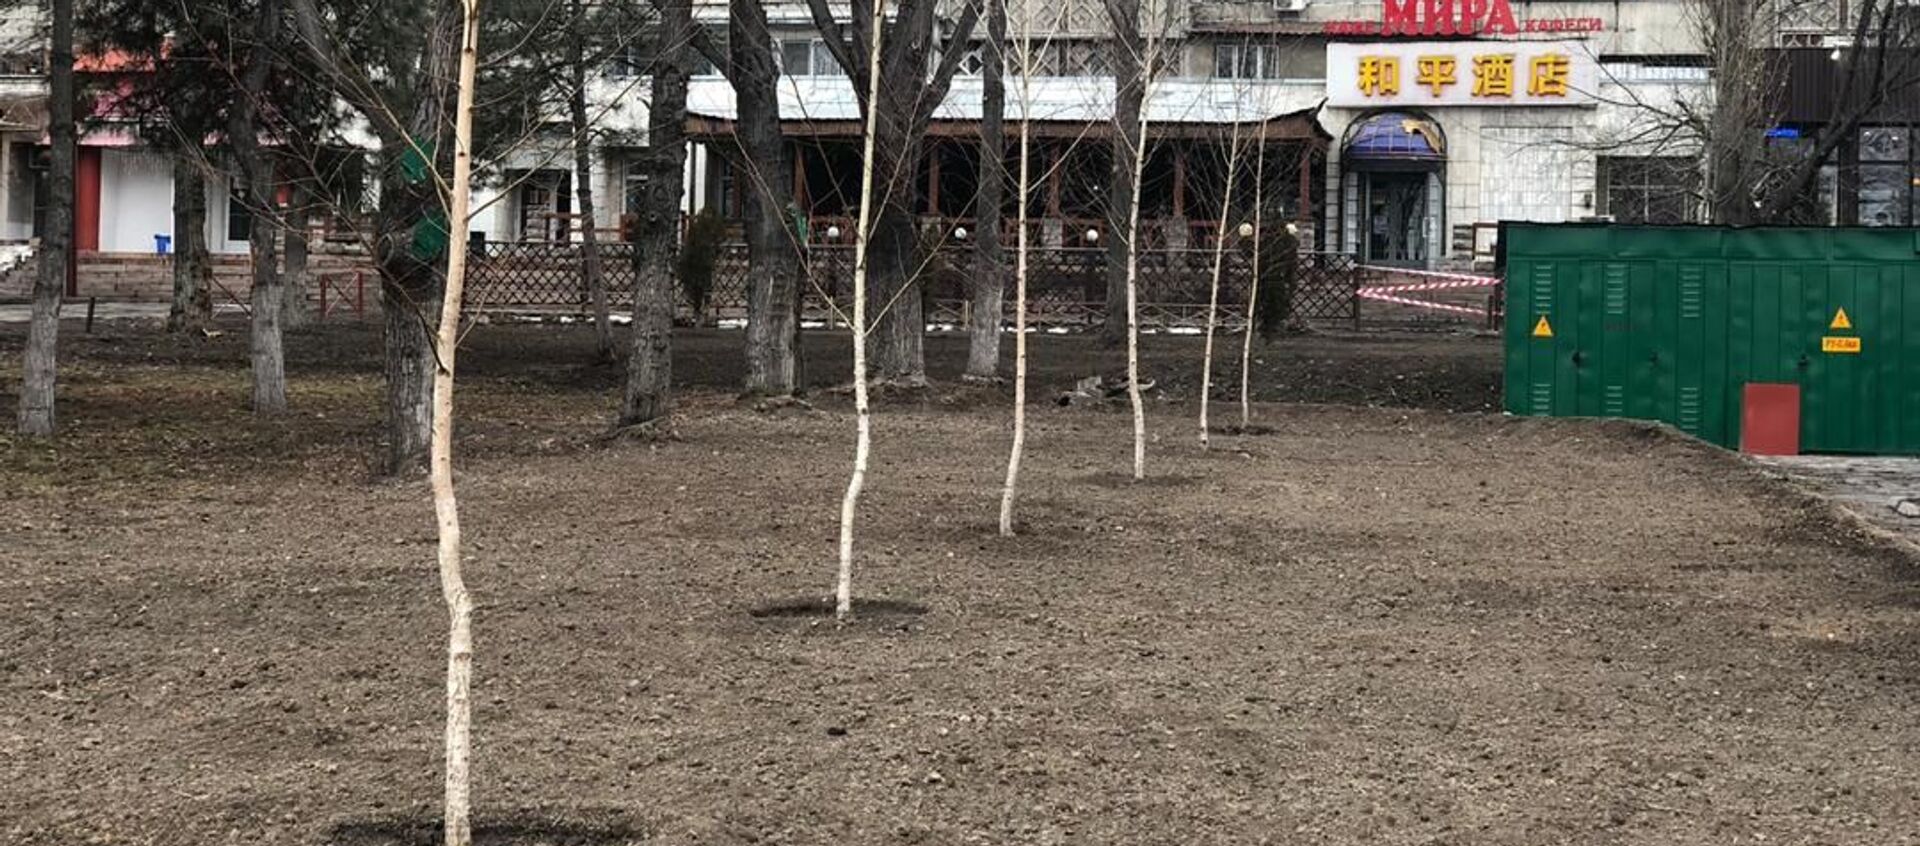 В Бишкеке возле торгового центра Red Centre появится зеленая зона вместо парковки - Sputnik Кыргызстан, 1920, 09.03.2021